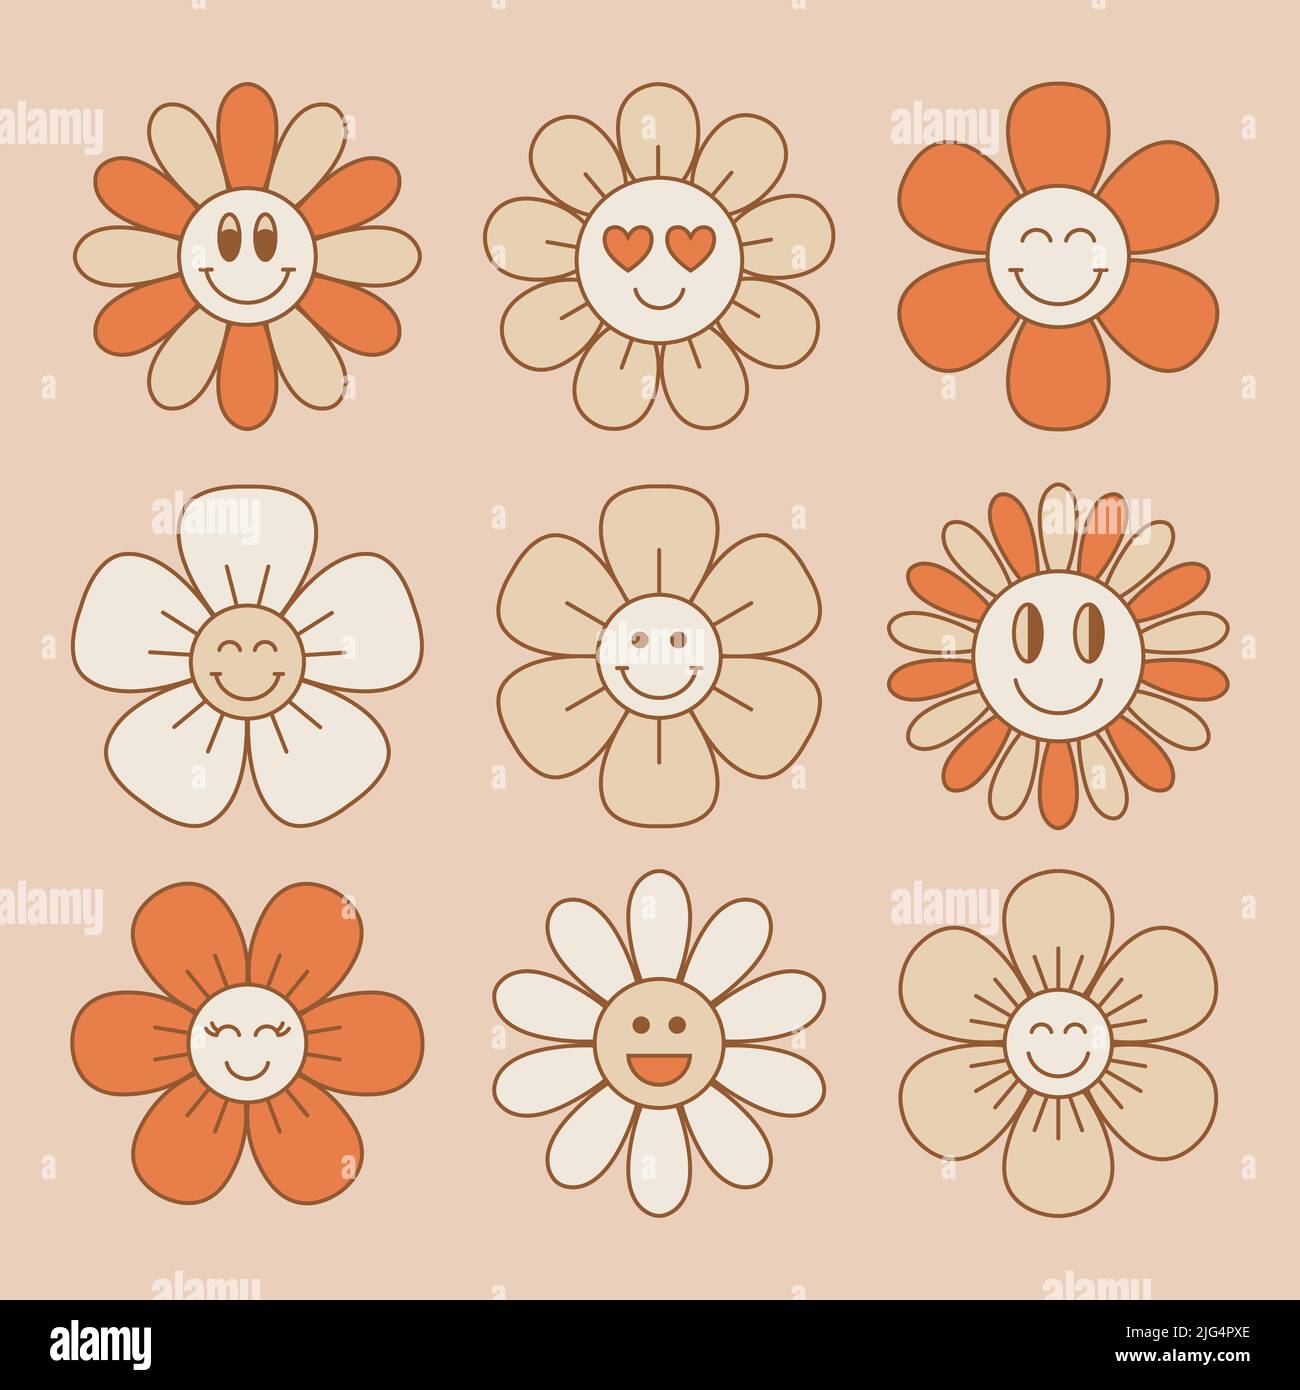 Niedliche und lächelnde Blumenkollektion im Retro 70s Stil. Vintage-Blumenmuster. Vektorgrafik. Stock Vektor